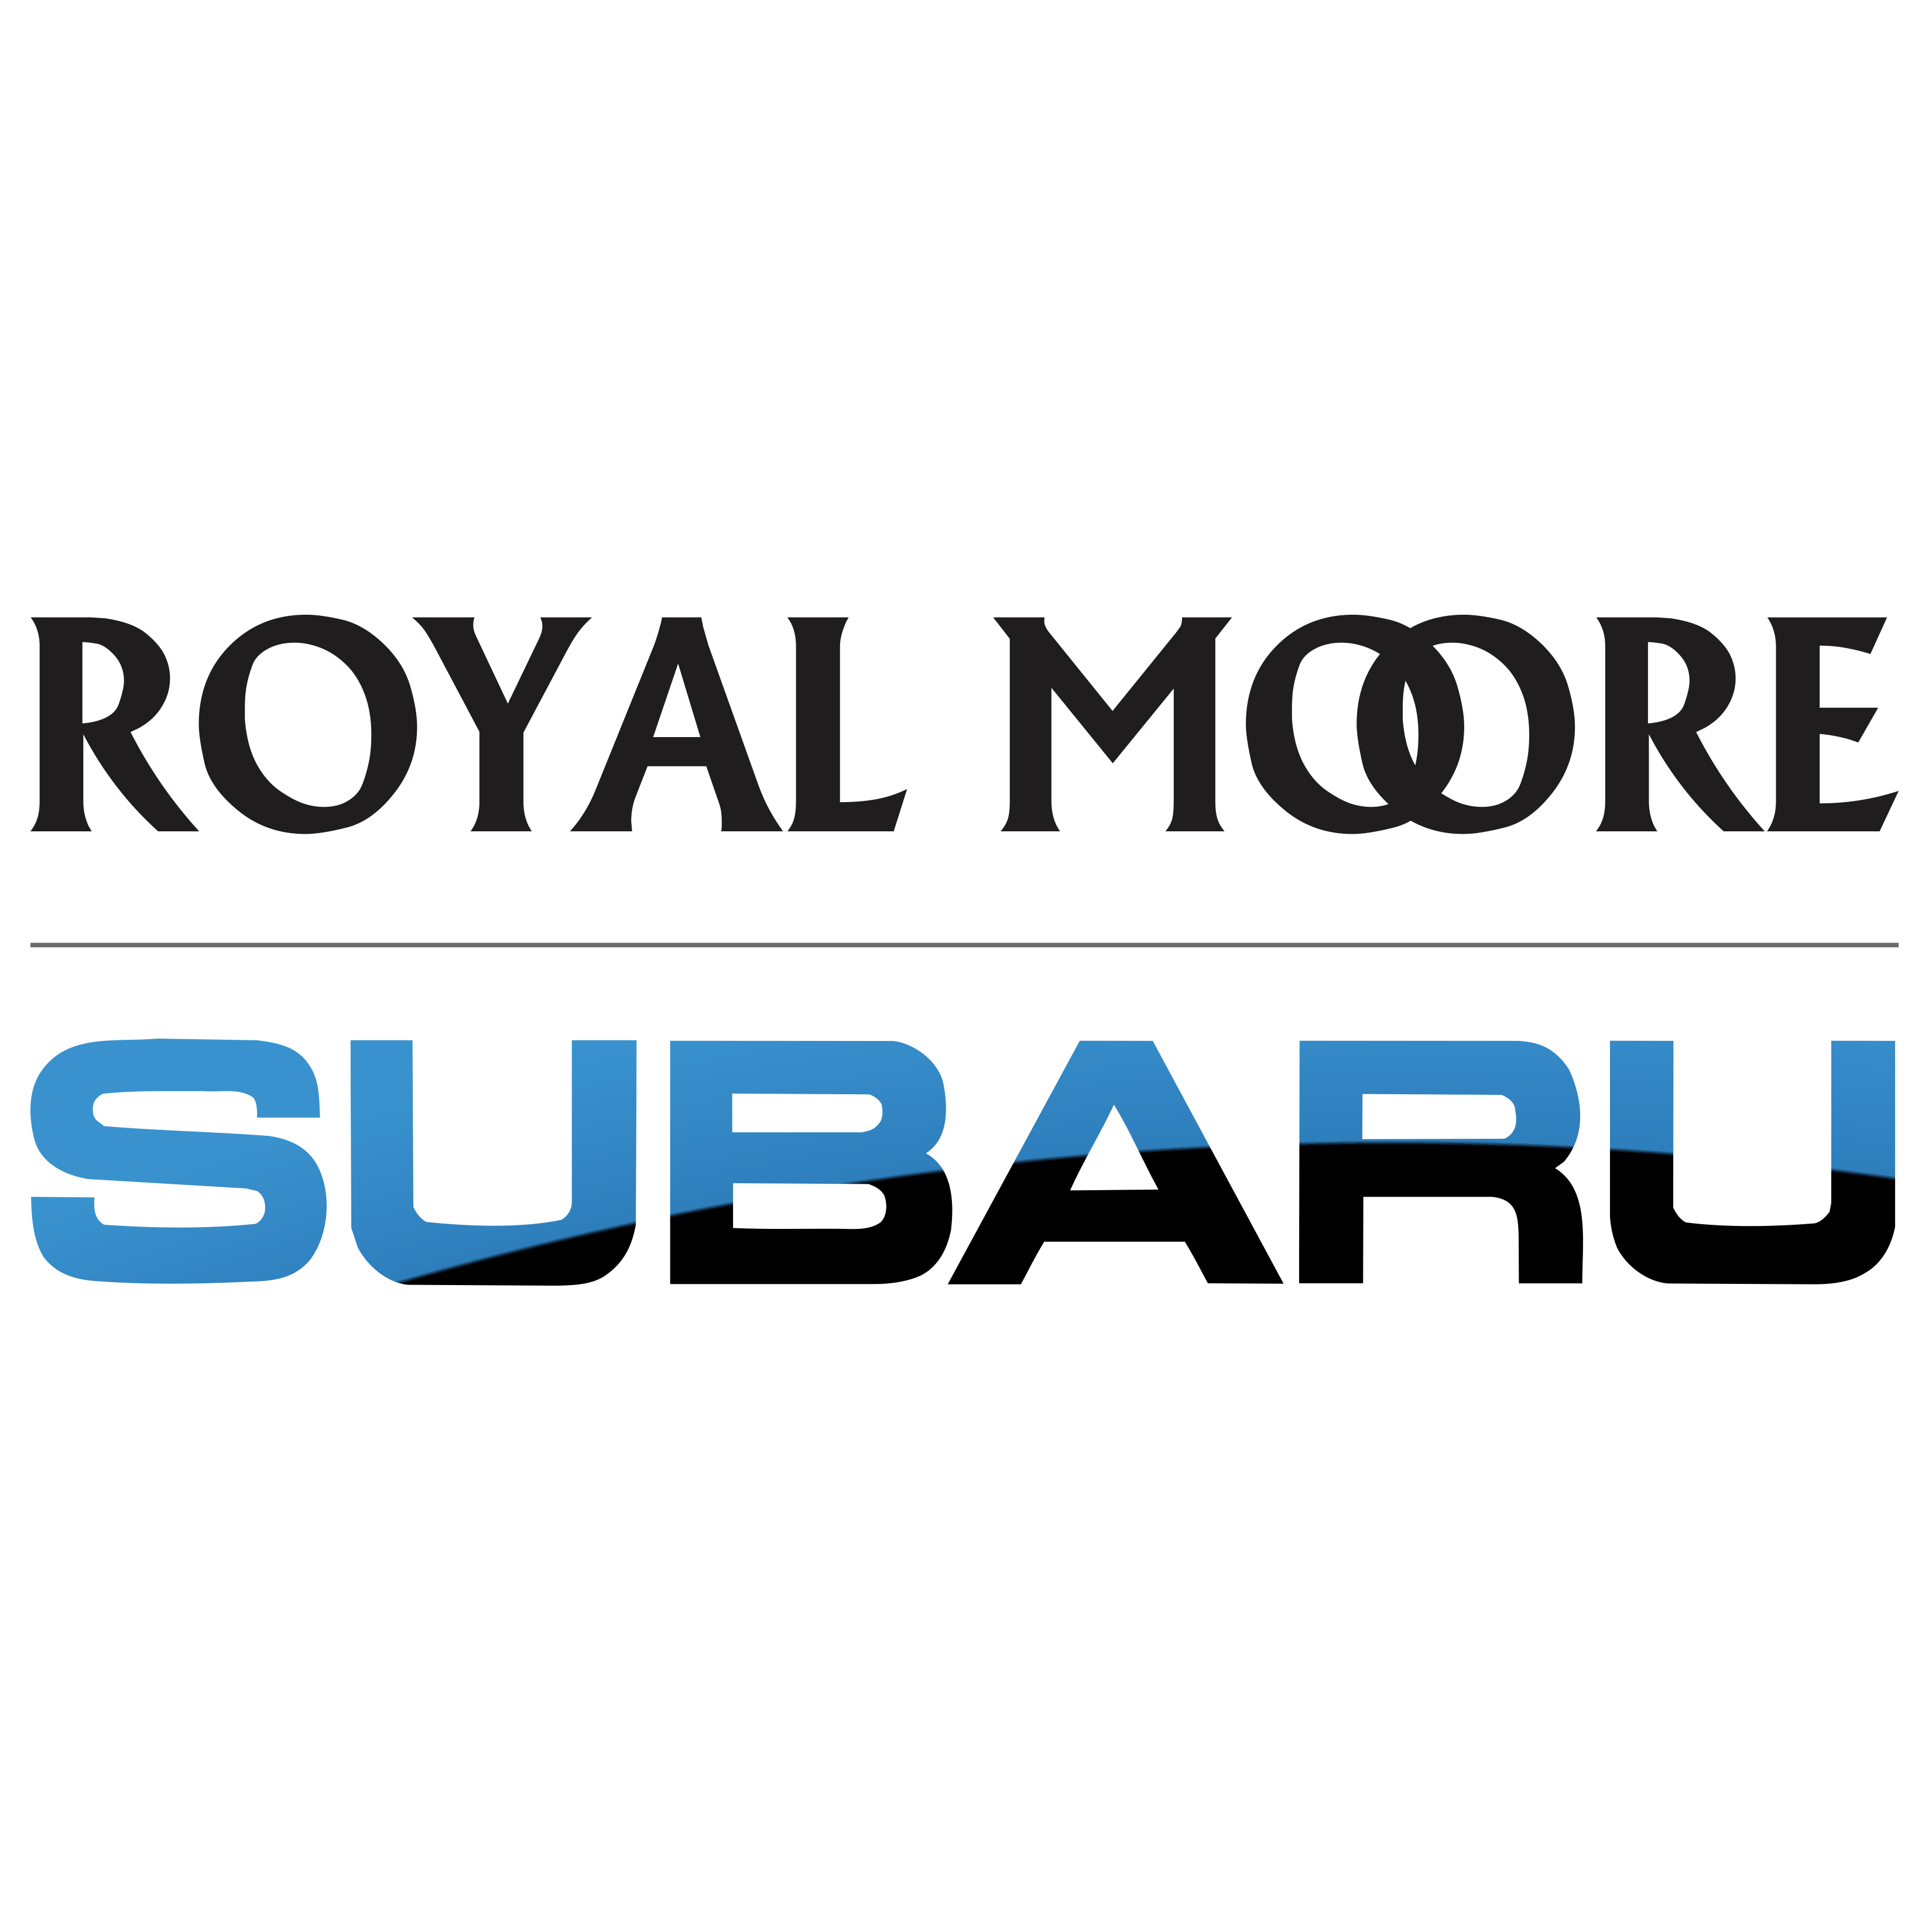 Royal Moore Subaru